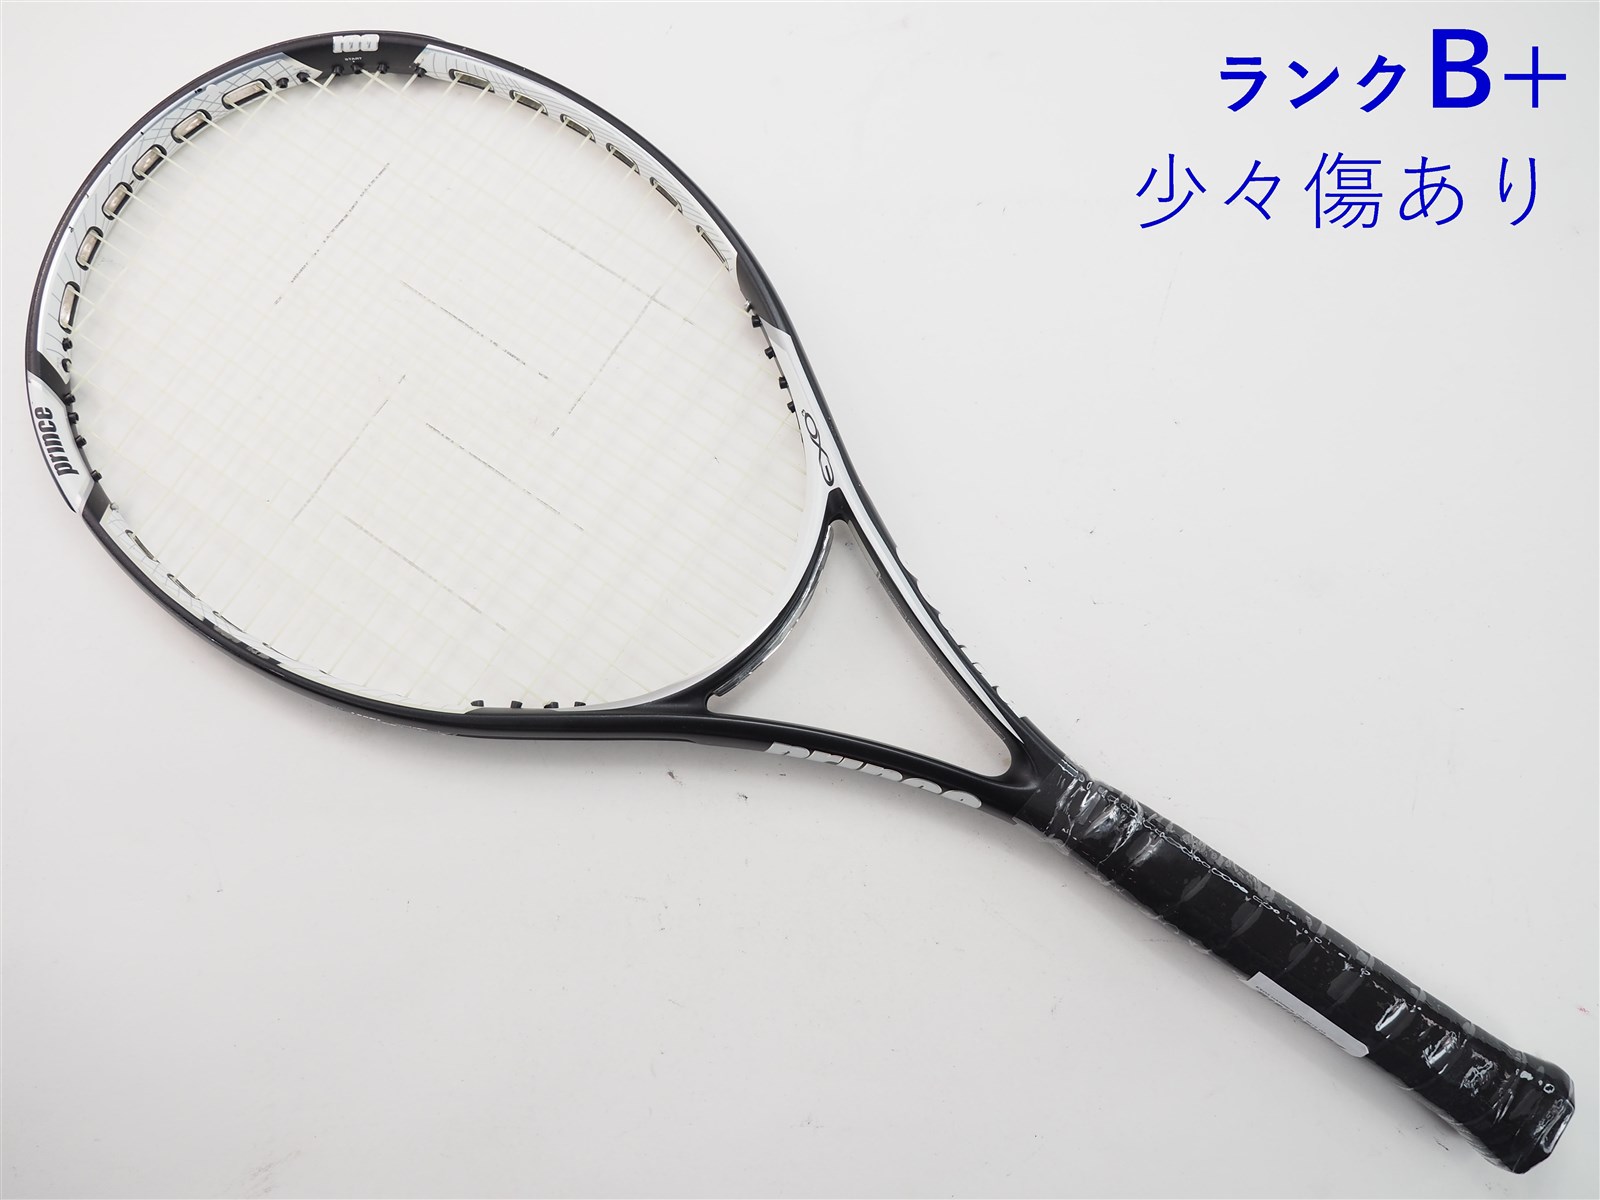 テニスラケット プリンス イーエックスオースリー グラファイト 100T 2013年モデル (G2)PRINCE EXO3 GRAPHITE 100T 2013